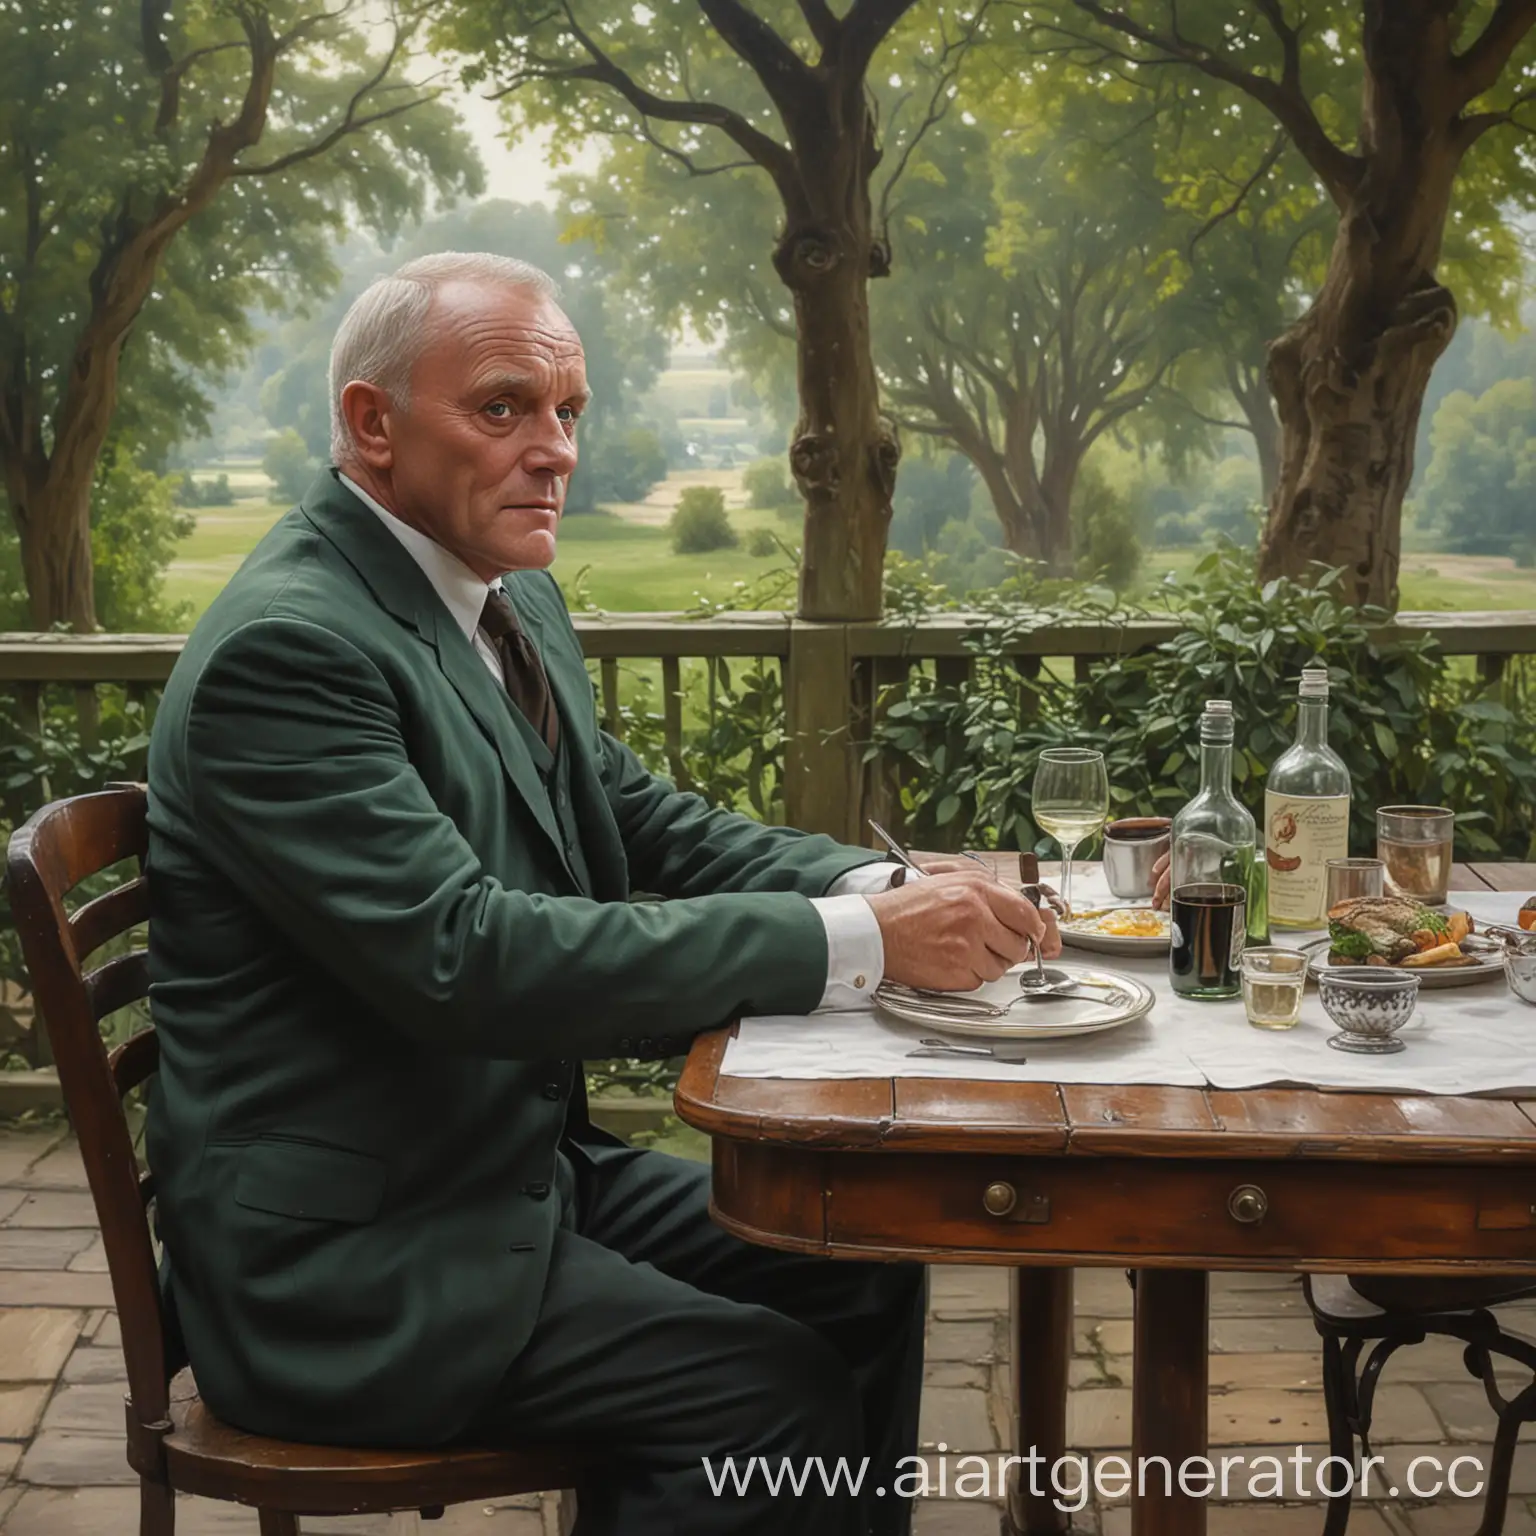 Мужчина, похожий на молодого Энтони Хопкинса, сидит за столом с бокалом в руке. На столе разнообразные блюда и напитки. Стол стоит на скромной веранде, на фоне видны зелёные деревья. Картина немного старомодная, это середина XX века. Около стола виден портфель бухгалтера.